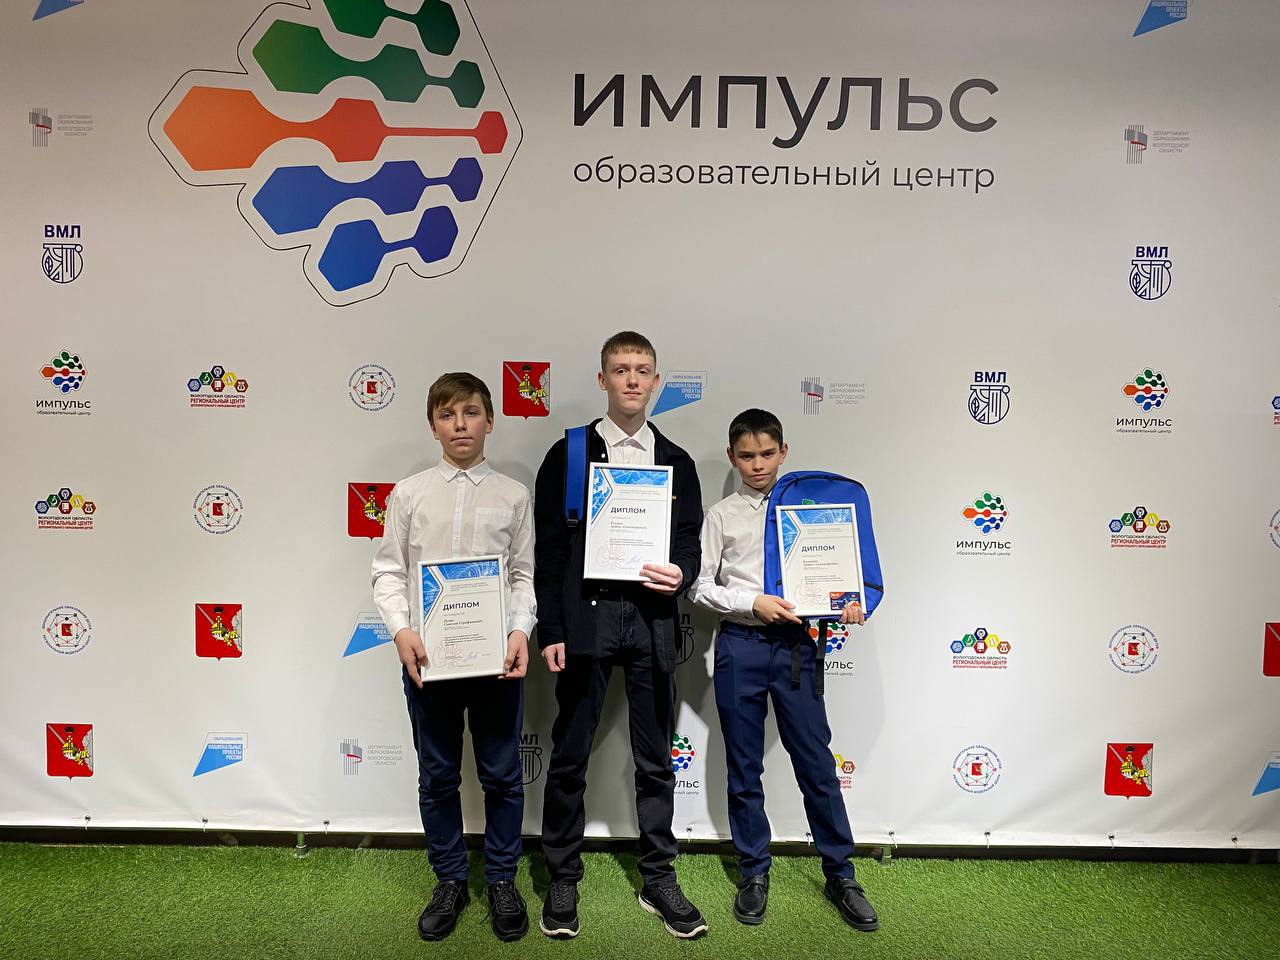 В Вологде чествовали победителей и призеров областных олимпиад школьников по математике и информатике на приз Губернатора.